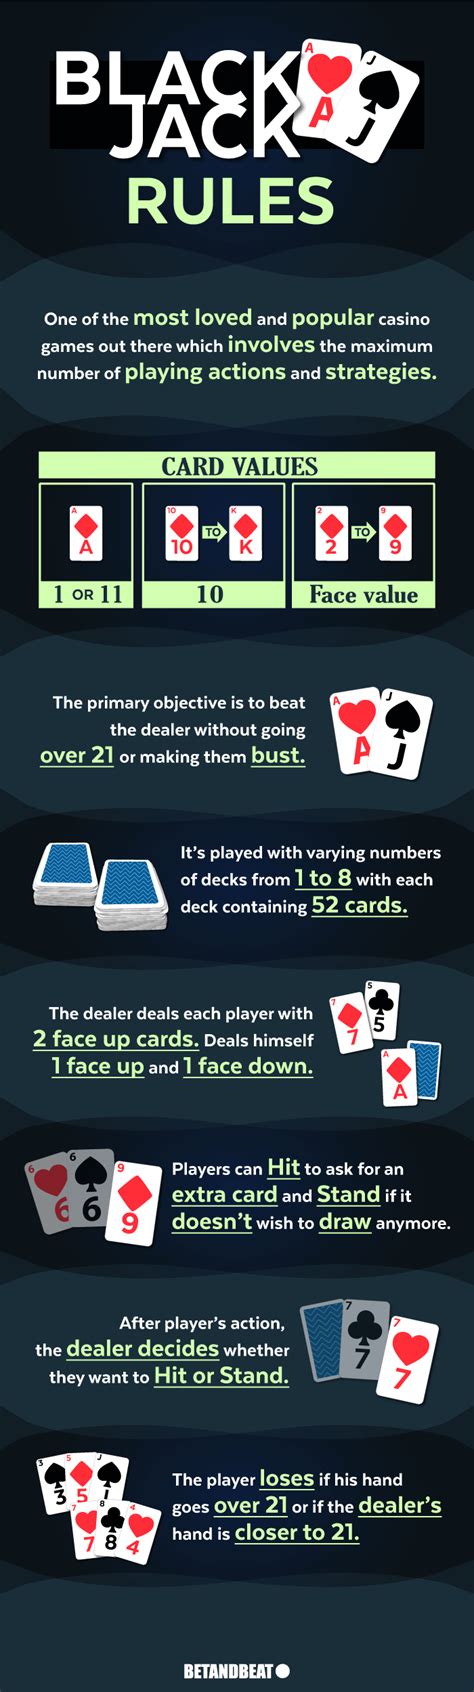 blackjack deck rules adfr belgium